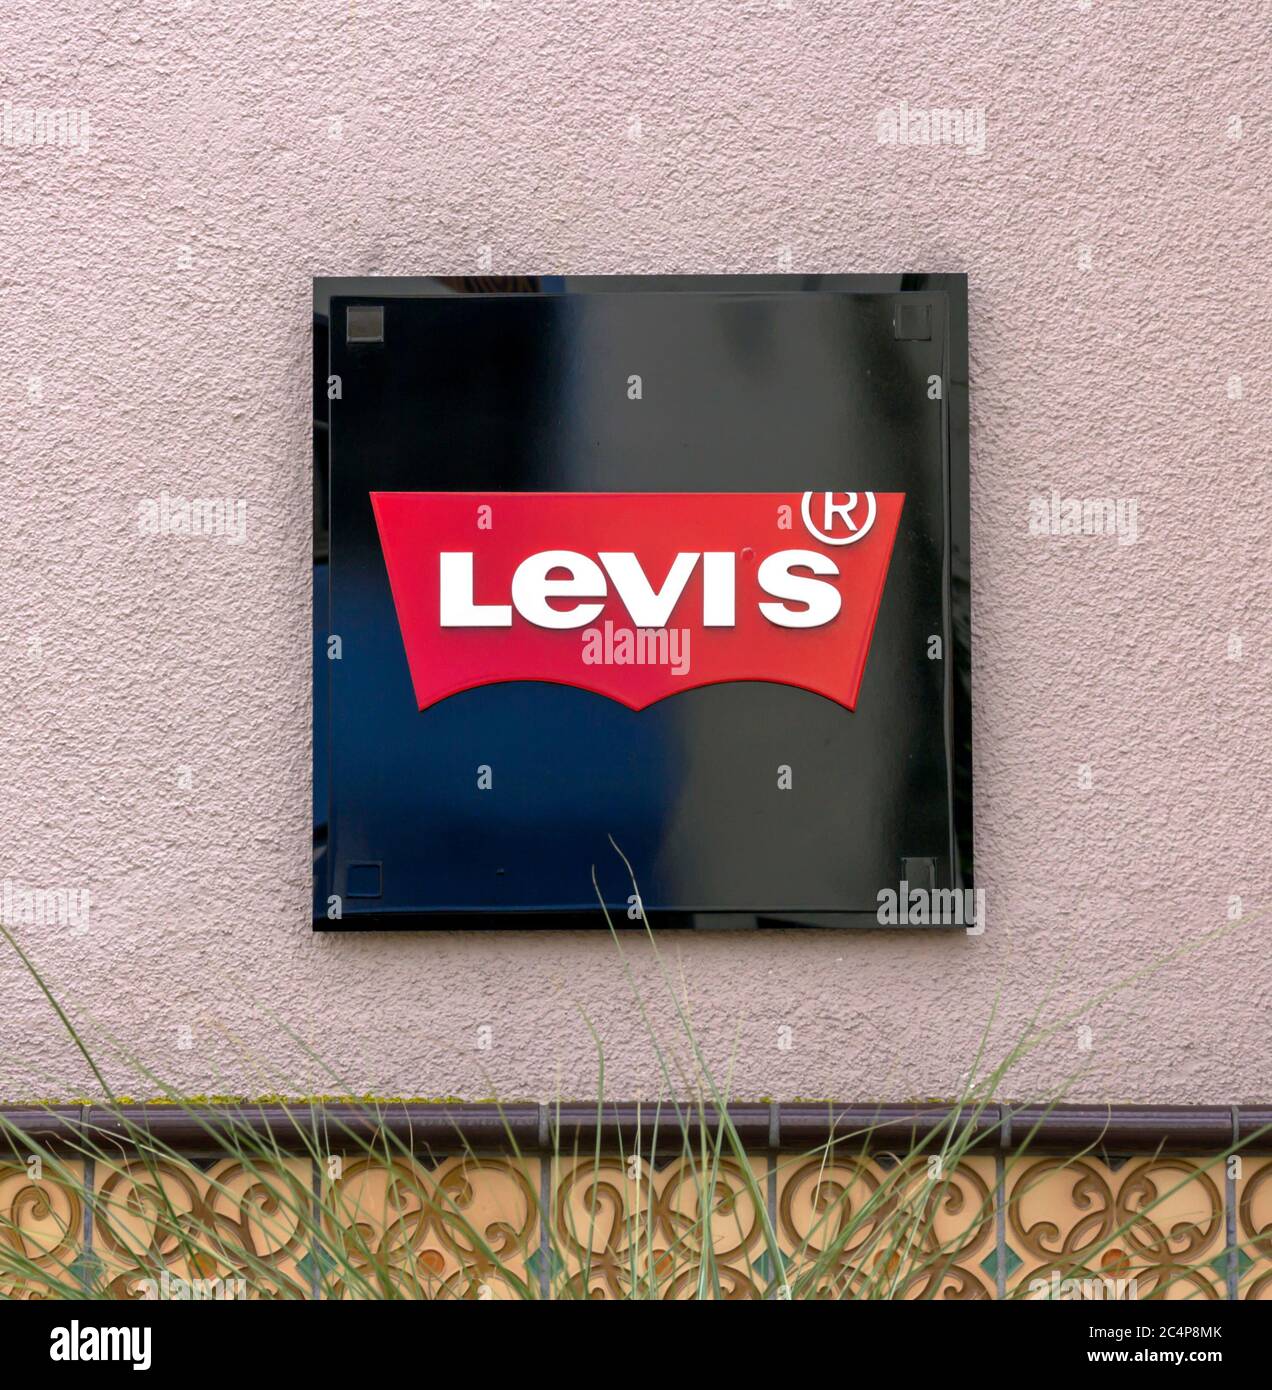 Ingolstadt, Deutschland : Levi's Outlet Store, Ingolstadt. Levi Strauss  wurde 1853 gegründet und ist ein amerikanisches Bekleidungsunternehmen, das  weltweit für seine Marke bekannt ist Stockfotografie - Alamy